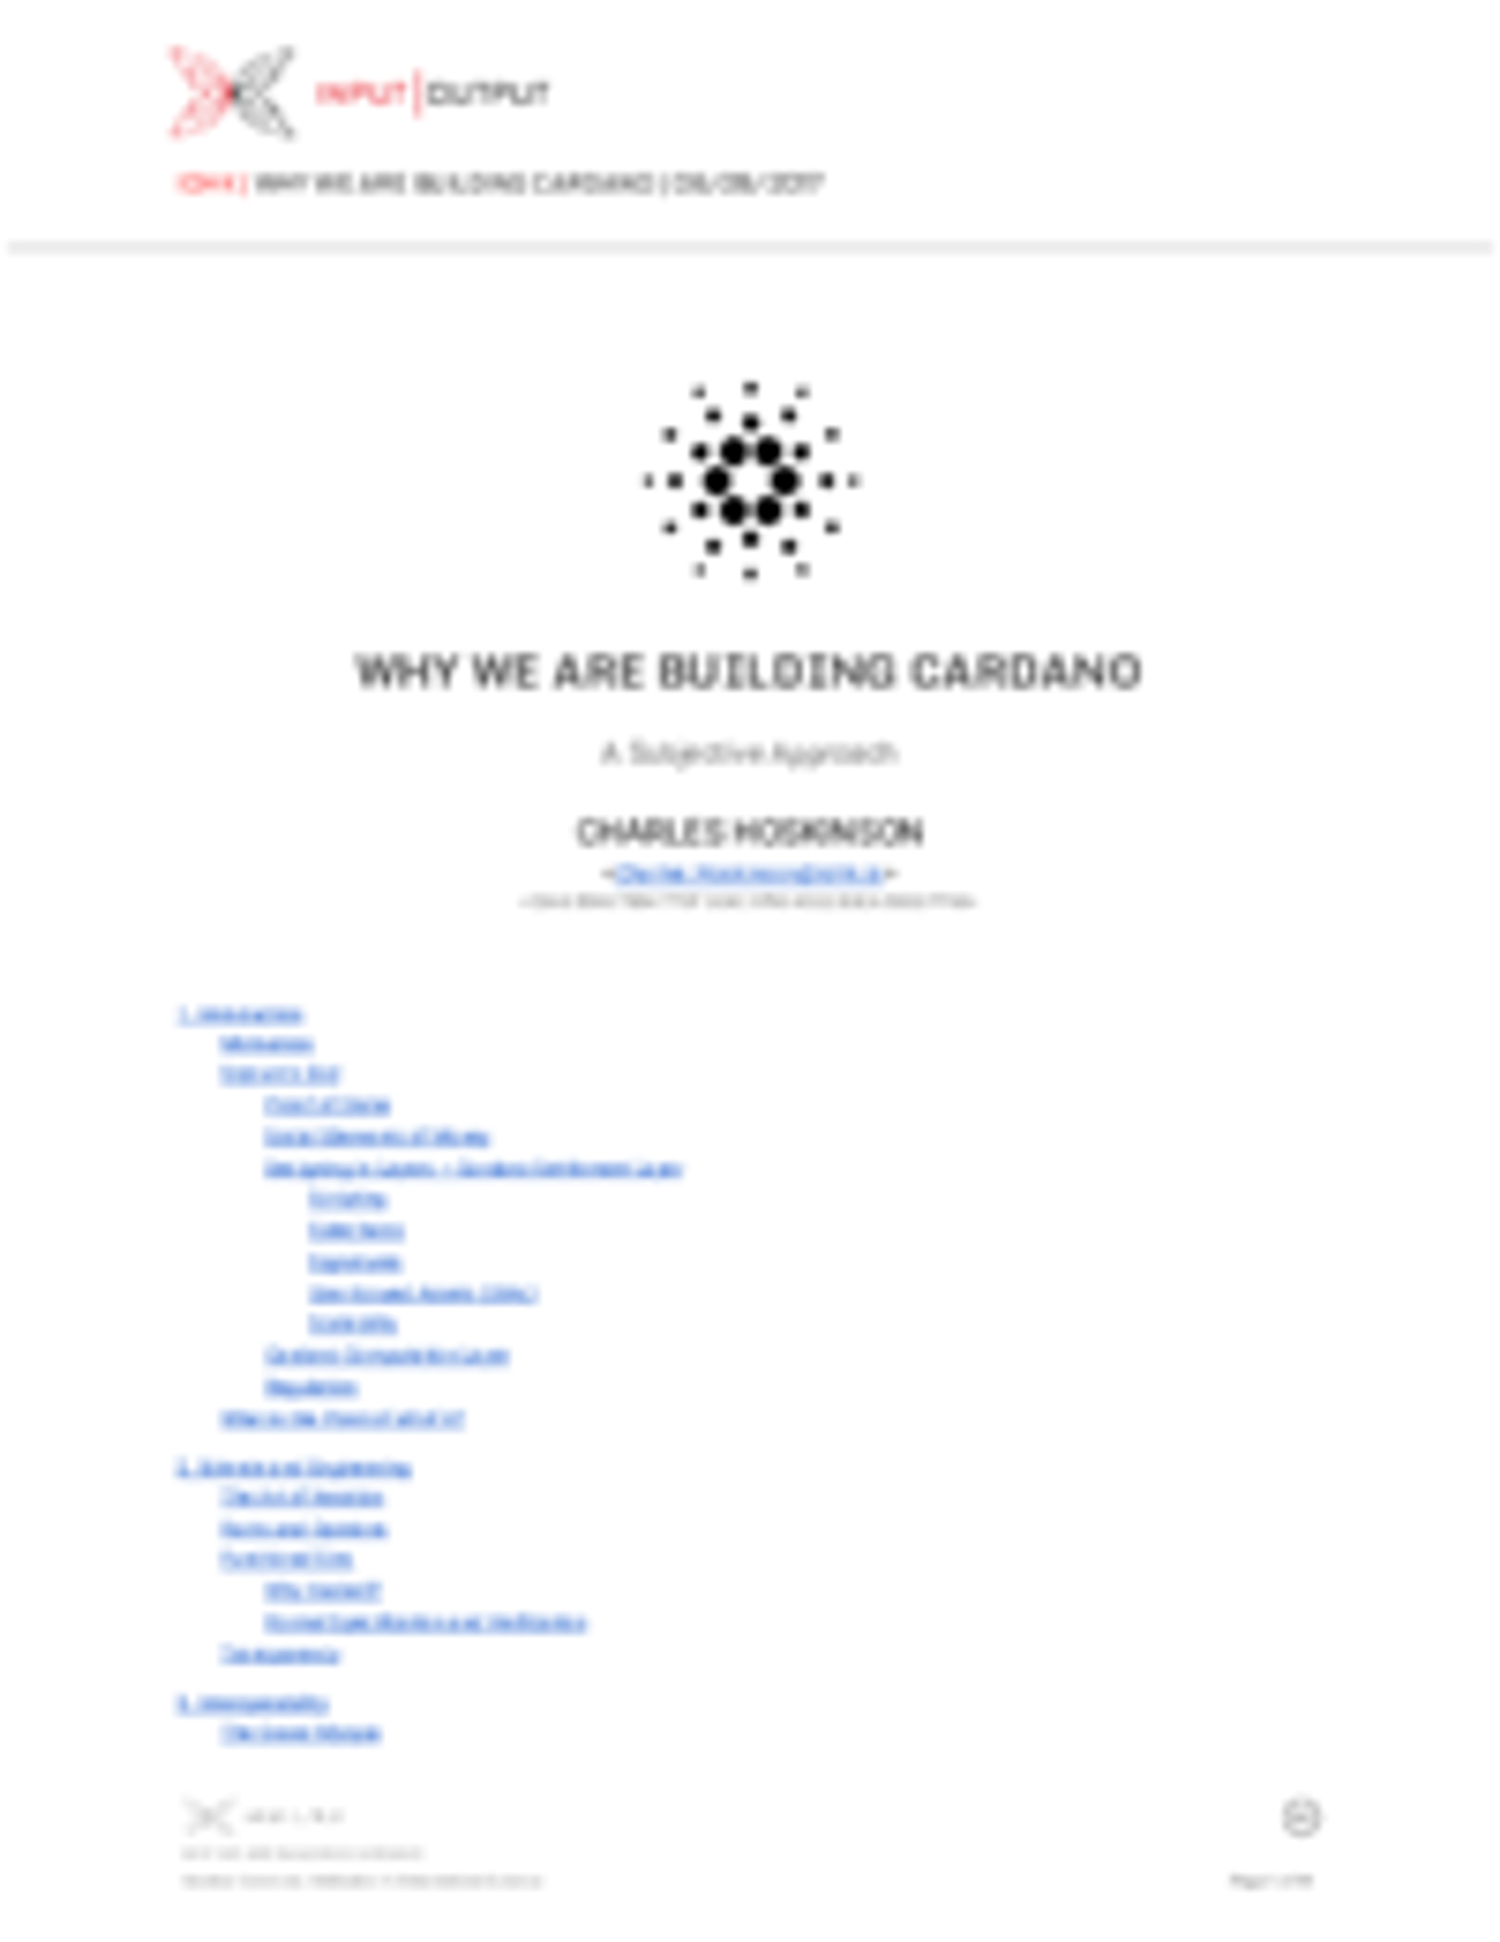 Cardano whitepaper - whitepaper.io